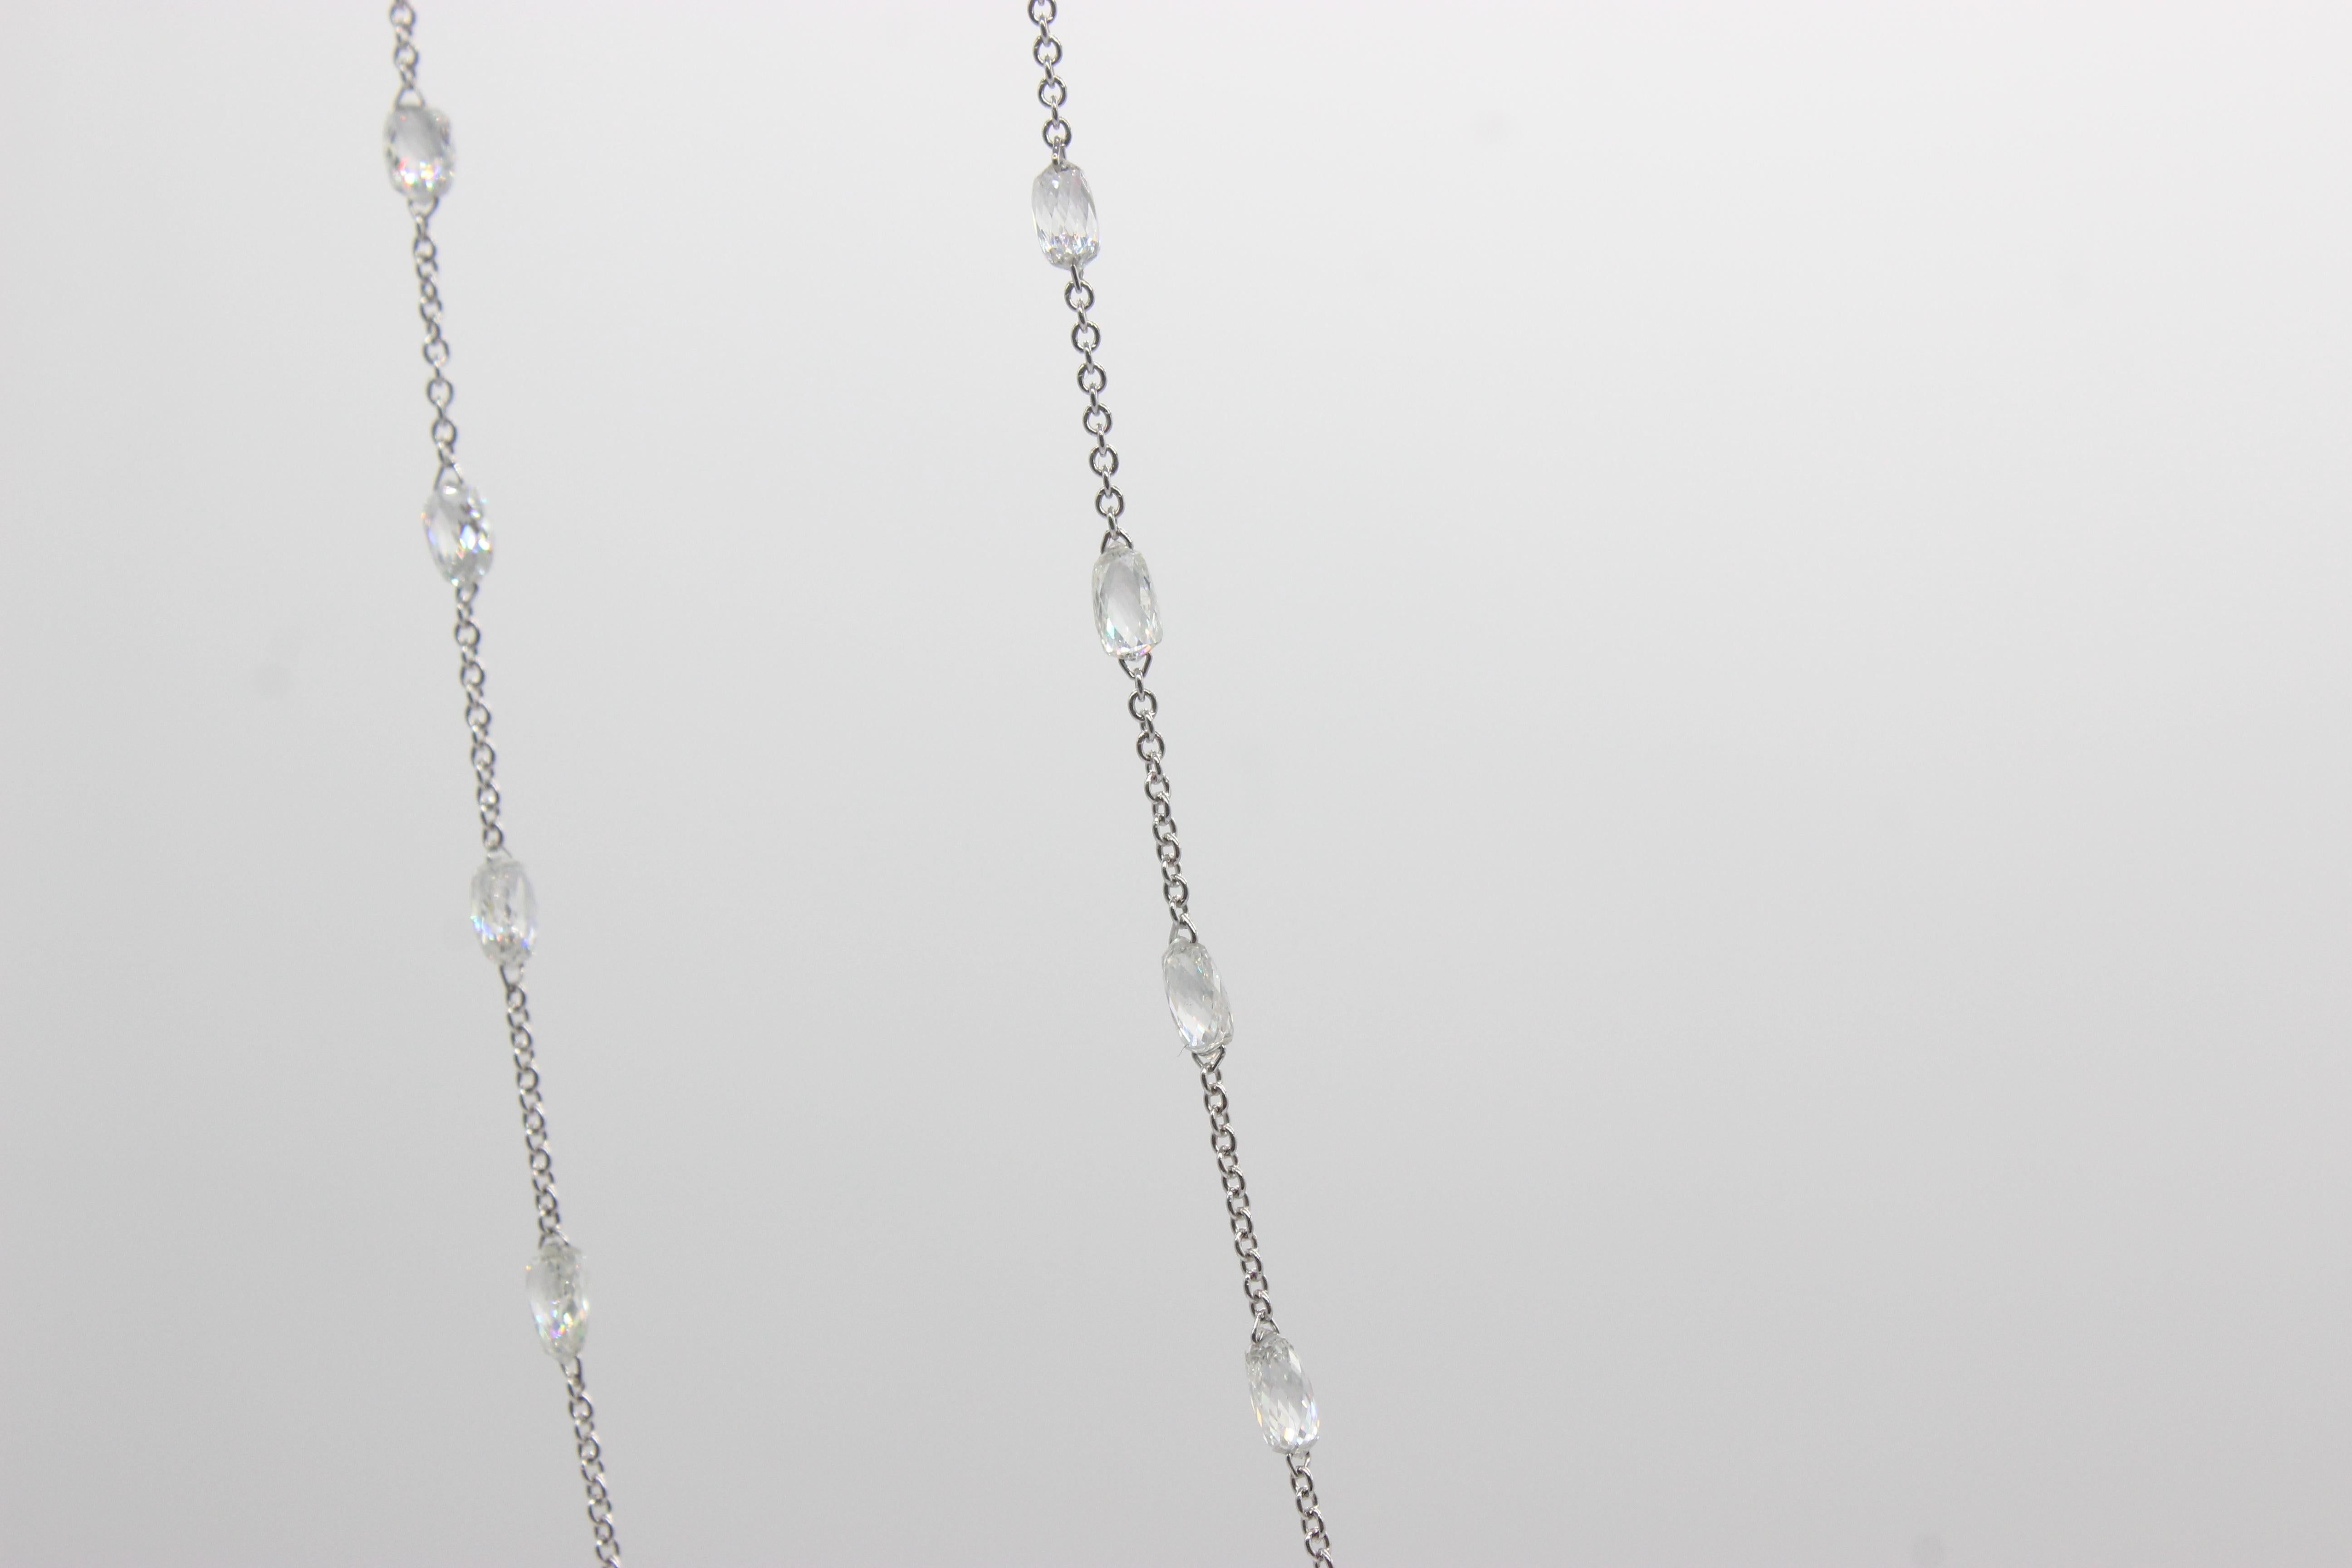 Briolette Cut PANIM 16.17 Carat Diamond Briolette 18K White Gold Necklace For Sale